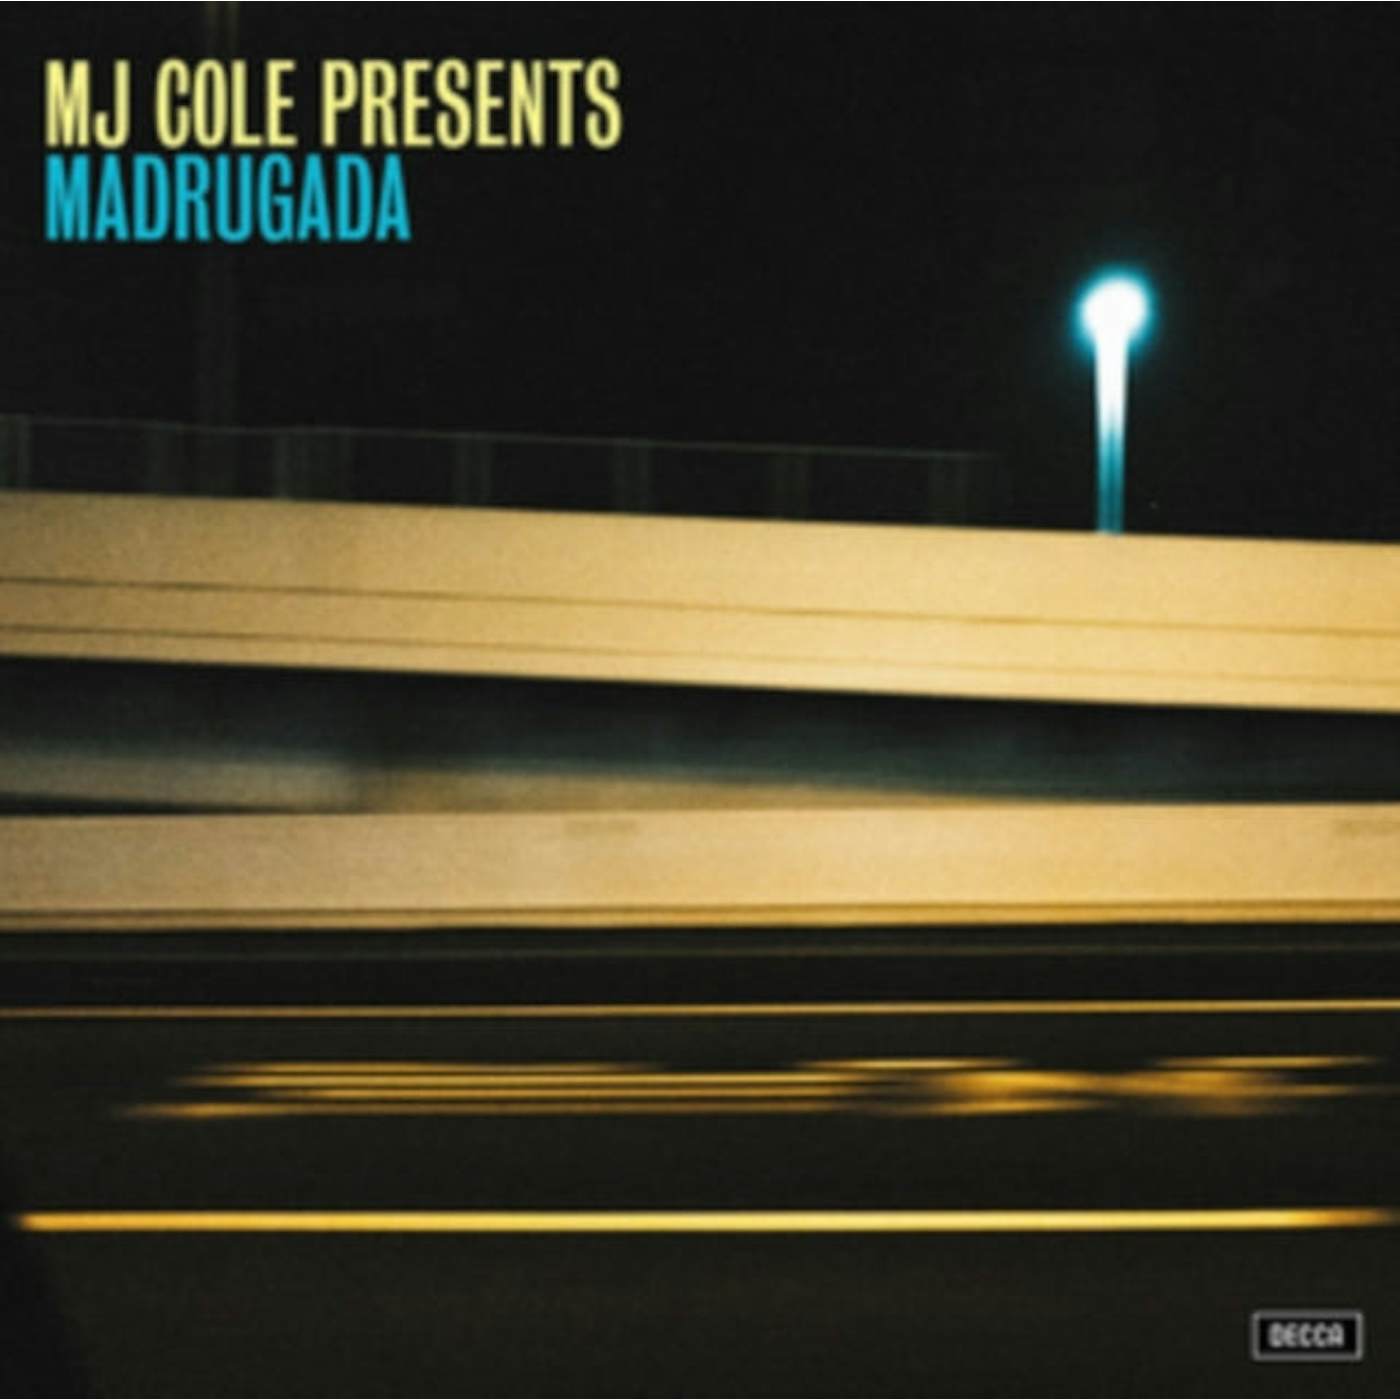 Mj Cole LP Vinyl Record - Mj Cole Presents Madrugada